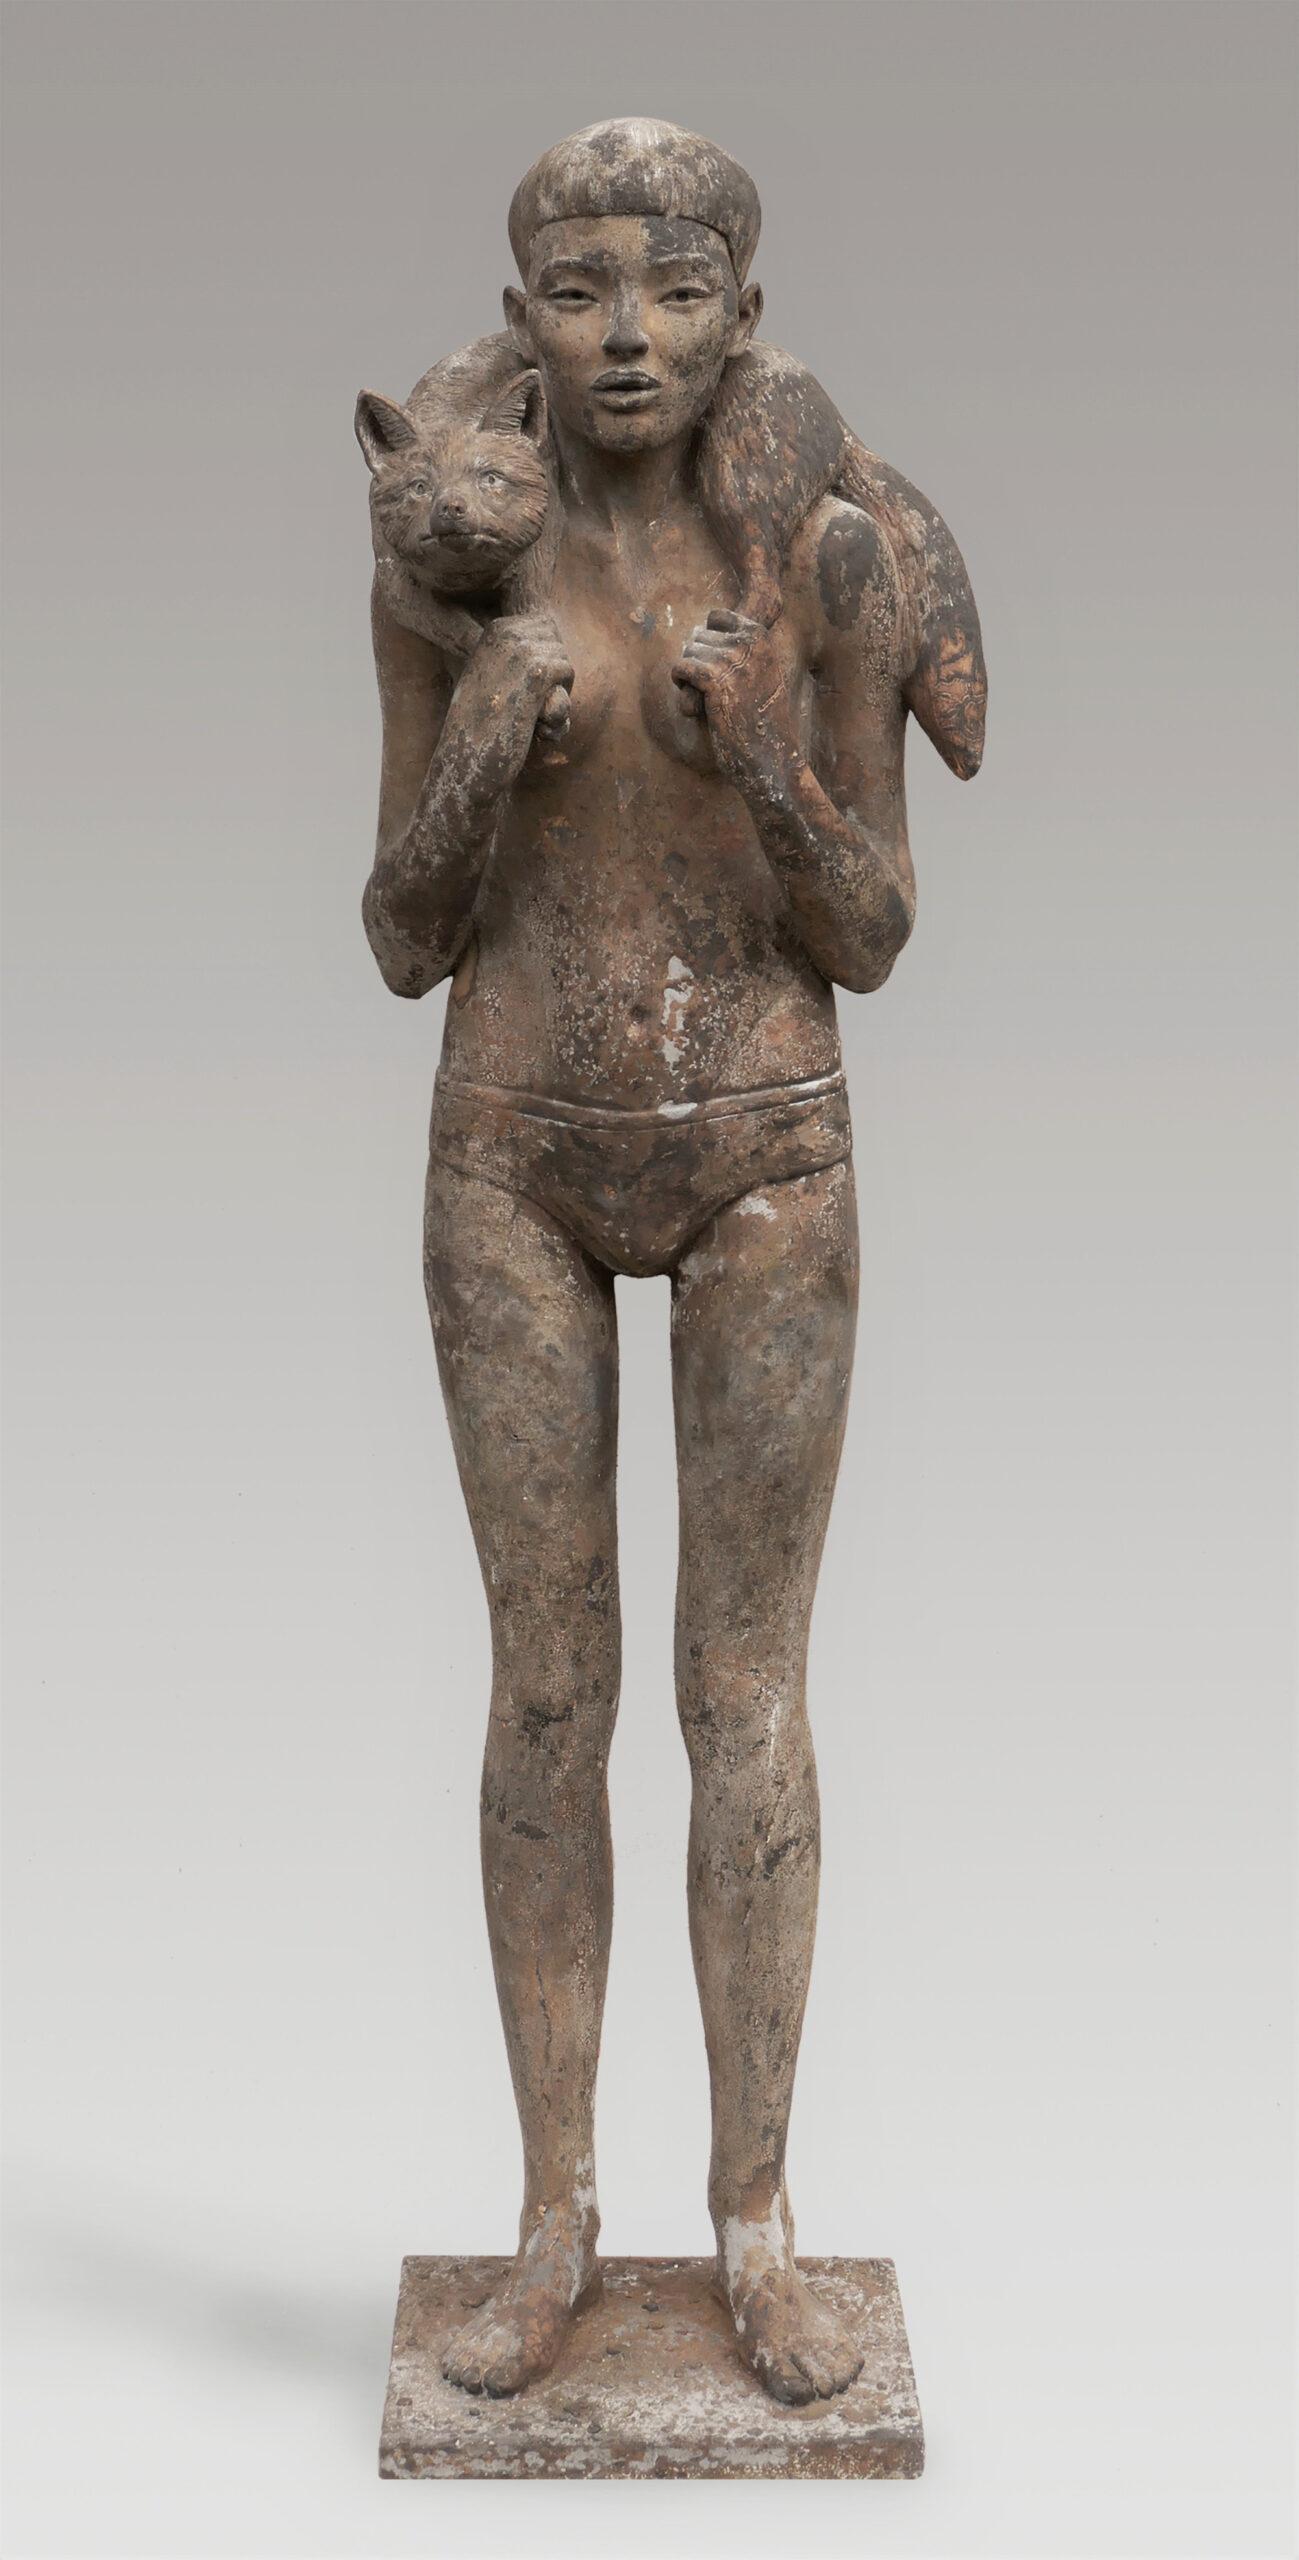 Erwin Meijer Figurative Sculpture - Vos Fox Bronze Sculpture Girl with Fox Figure People Animal 